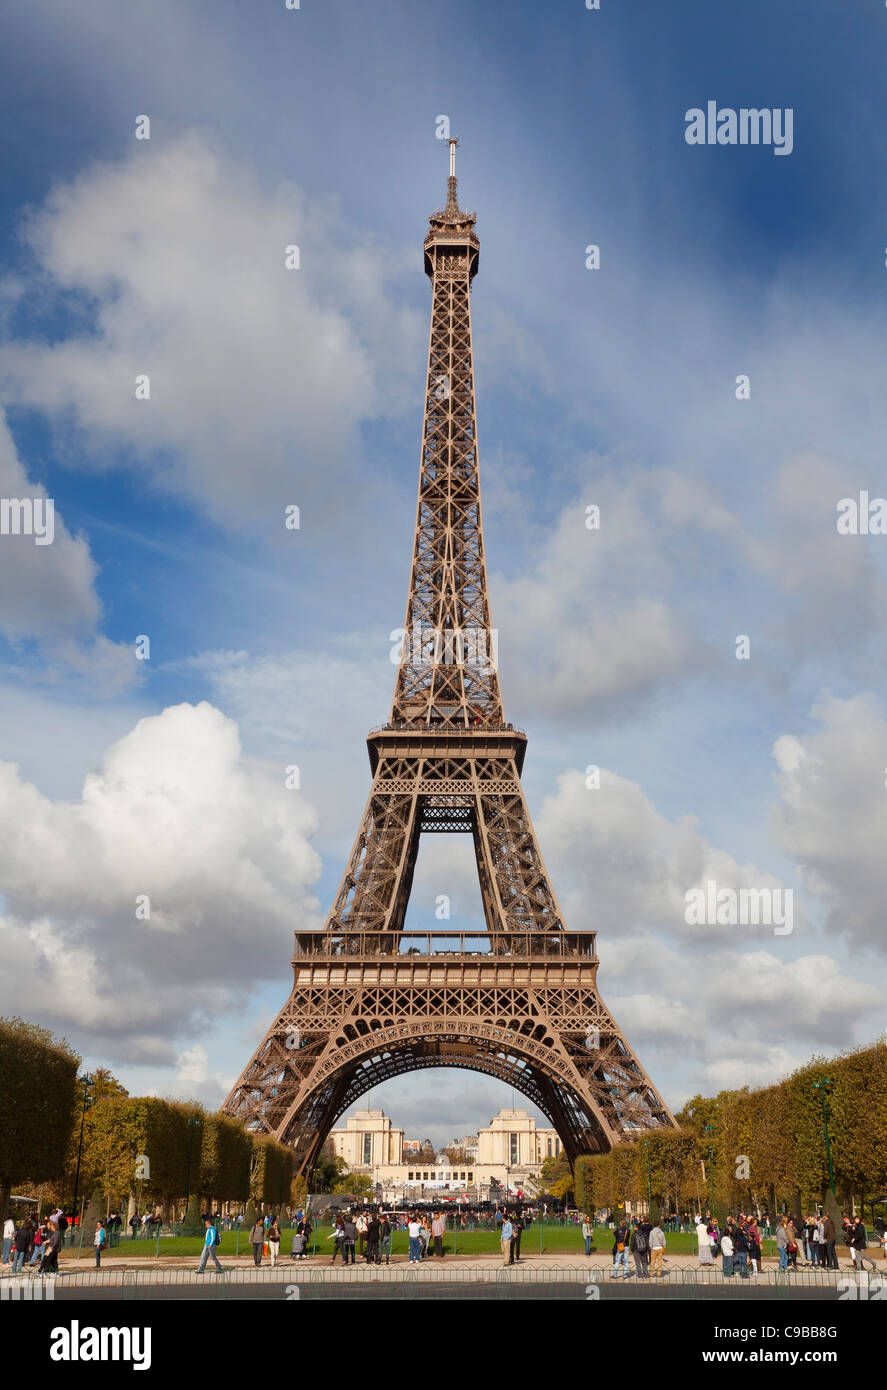 La torre Eiffel, vista desde el sur, París, Francia. Día soleado cielo azul. Foto de stock